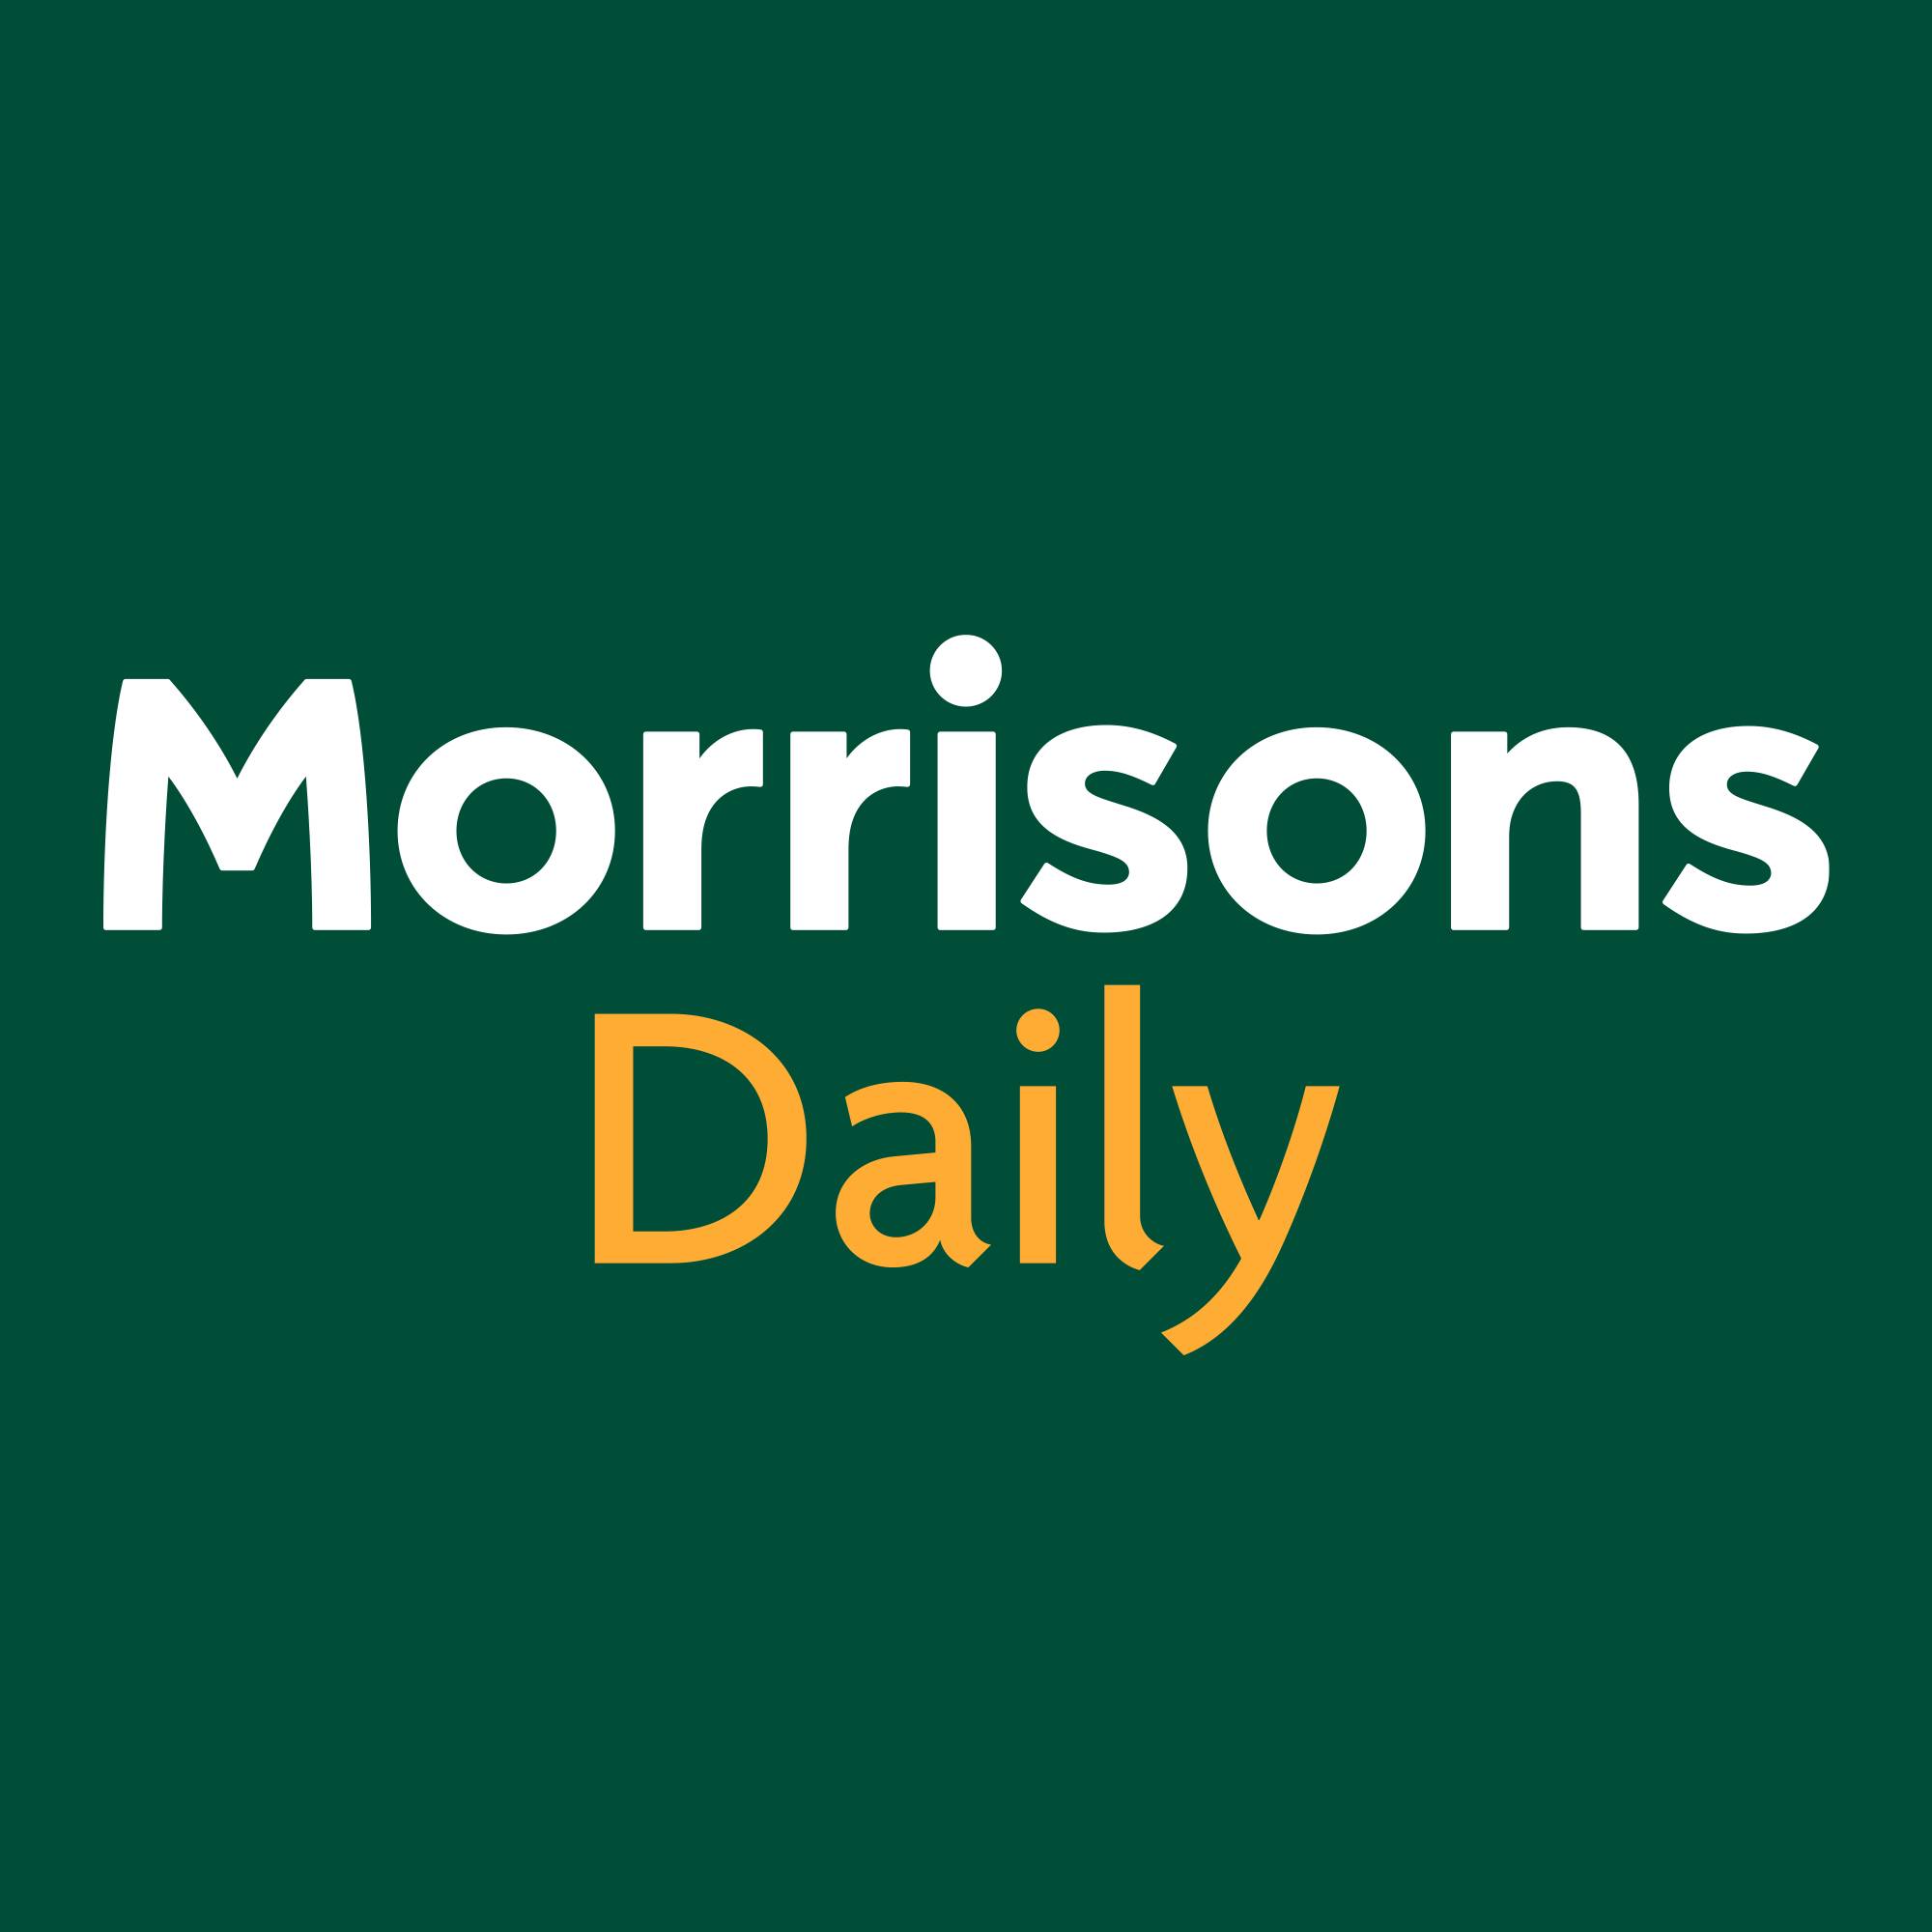 Morrison's Daily logo